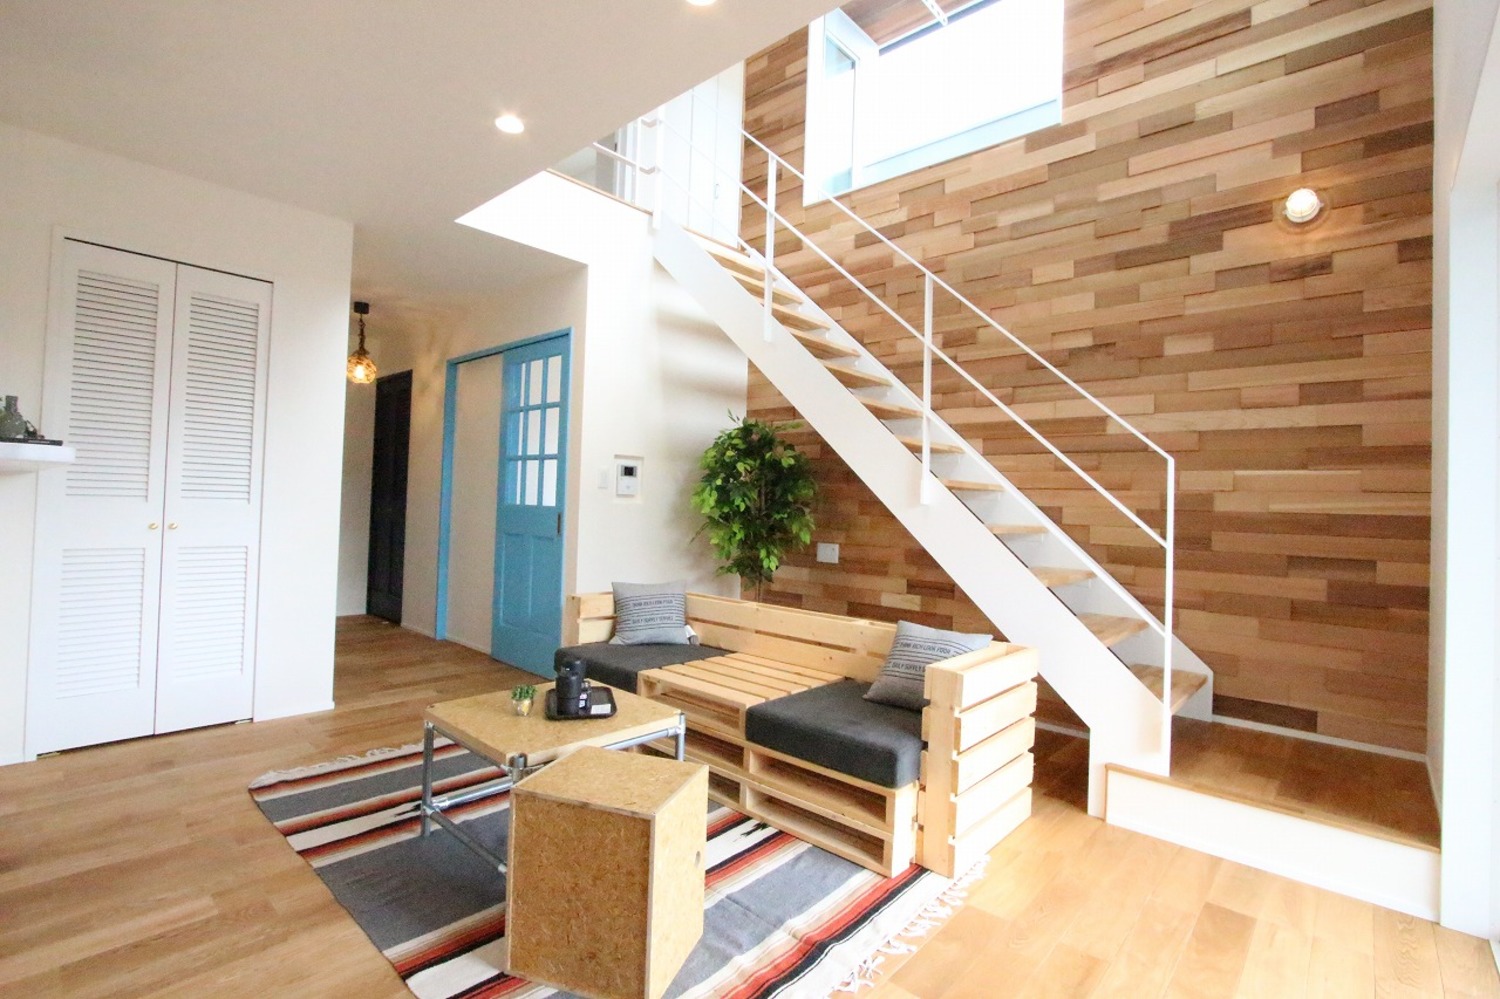 -ゆるっとオシャレな西海岸風のデザイン-
シースルー階段が家族を繋ぐハンモックの似合う家